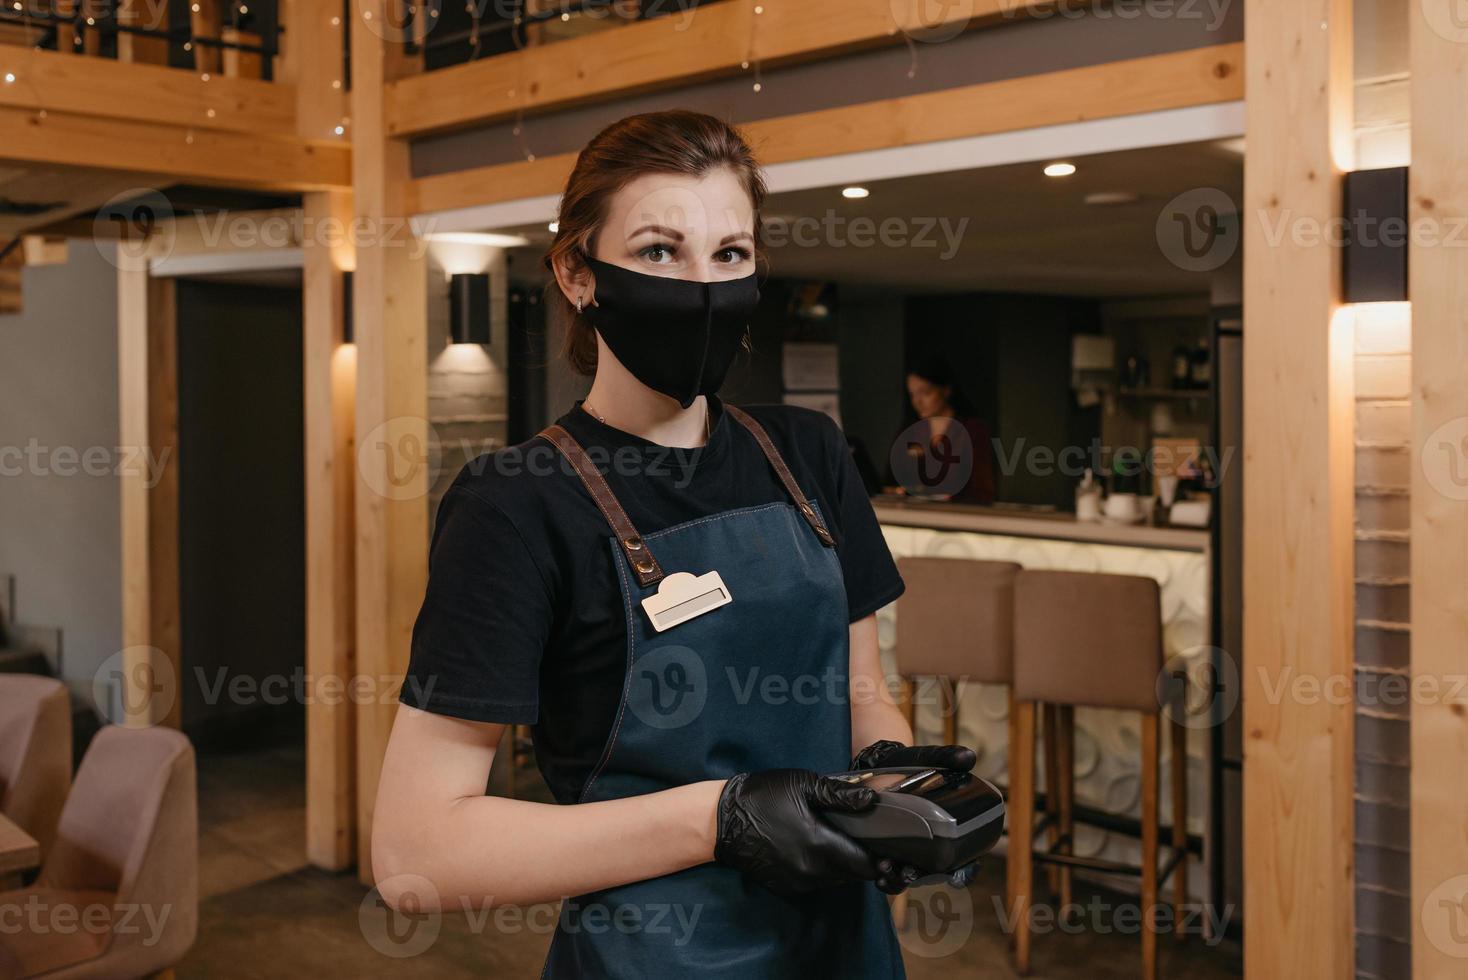 uma garçonete que usa um avental, uma máscara facial preta e luvas médicas descartáveis segura um terminal de pagamento sem fio em um restaurante foto